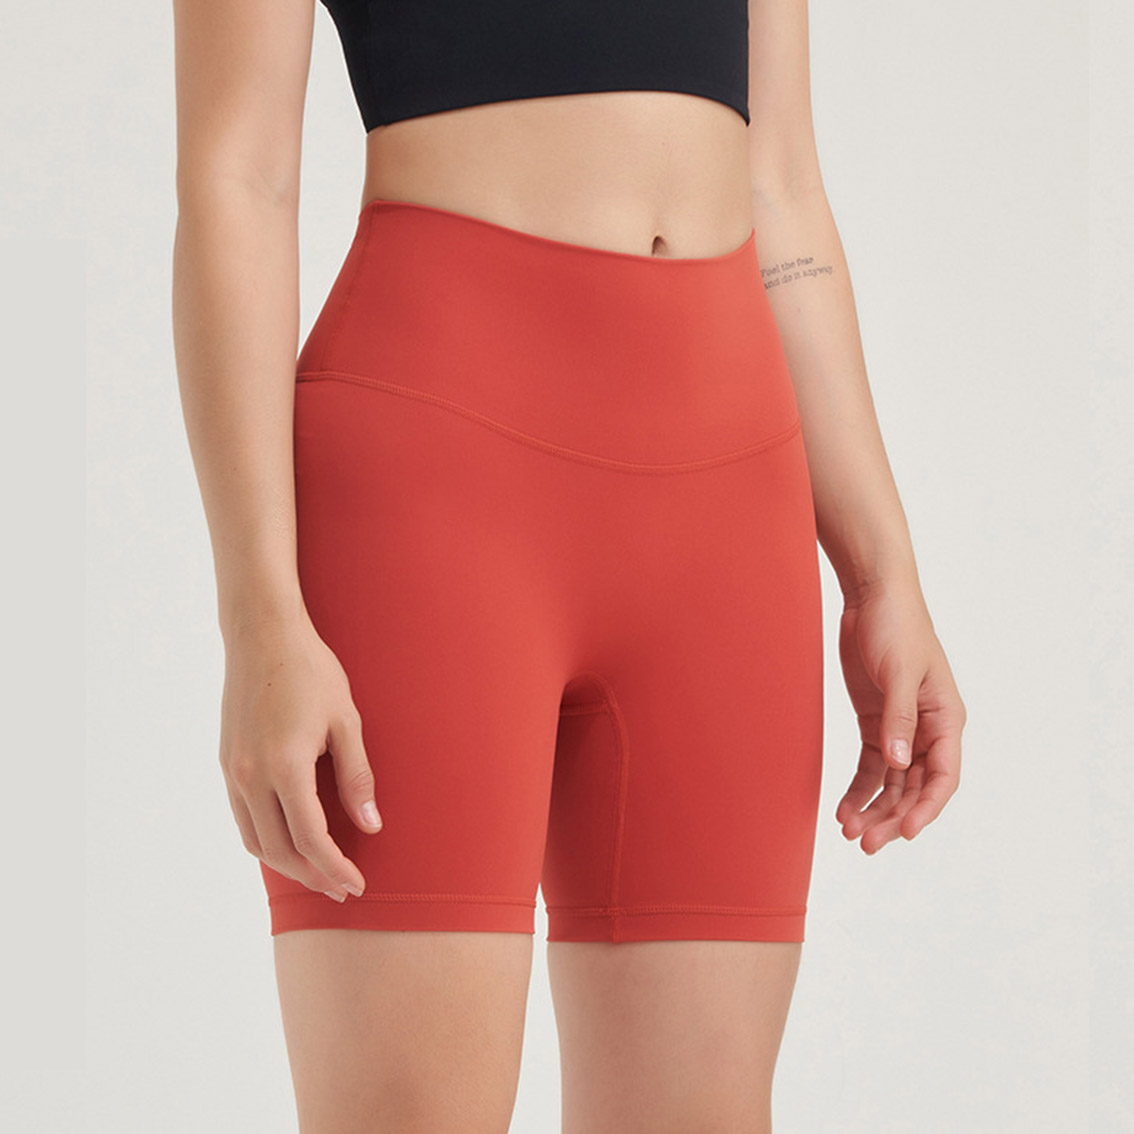 yoga shorts wholesale